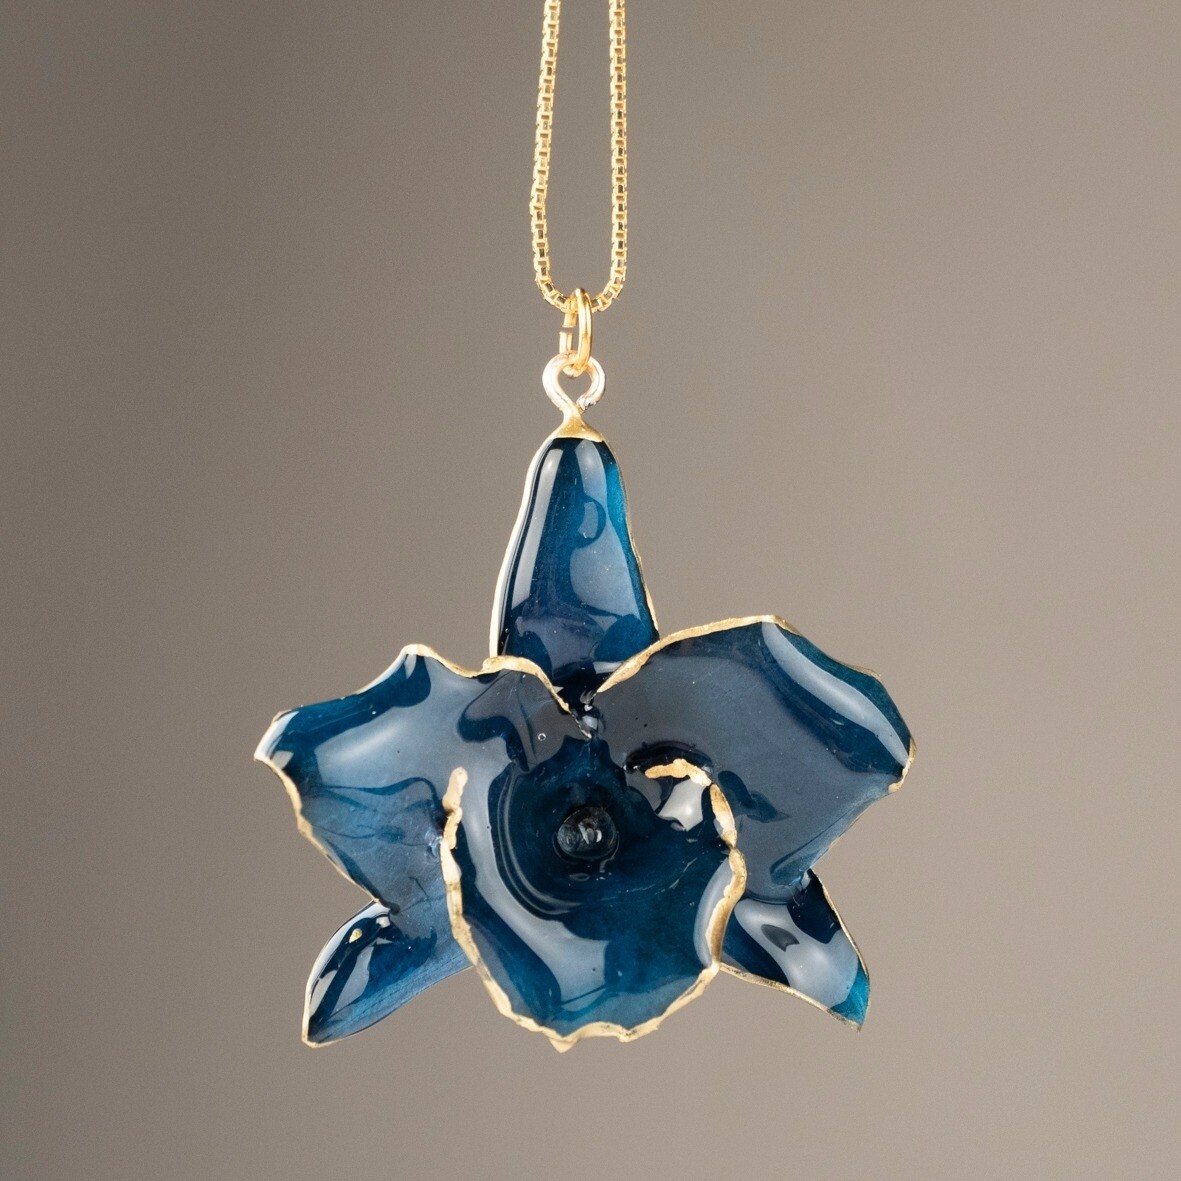 Ciondolo orchidea blu notte con catenina